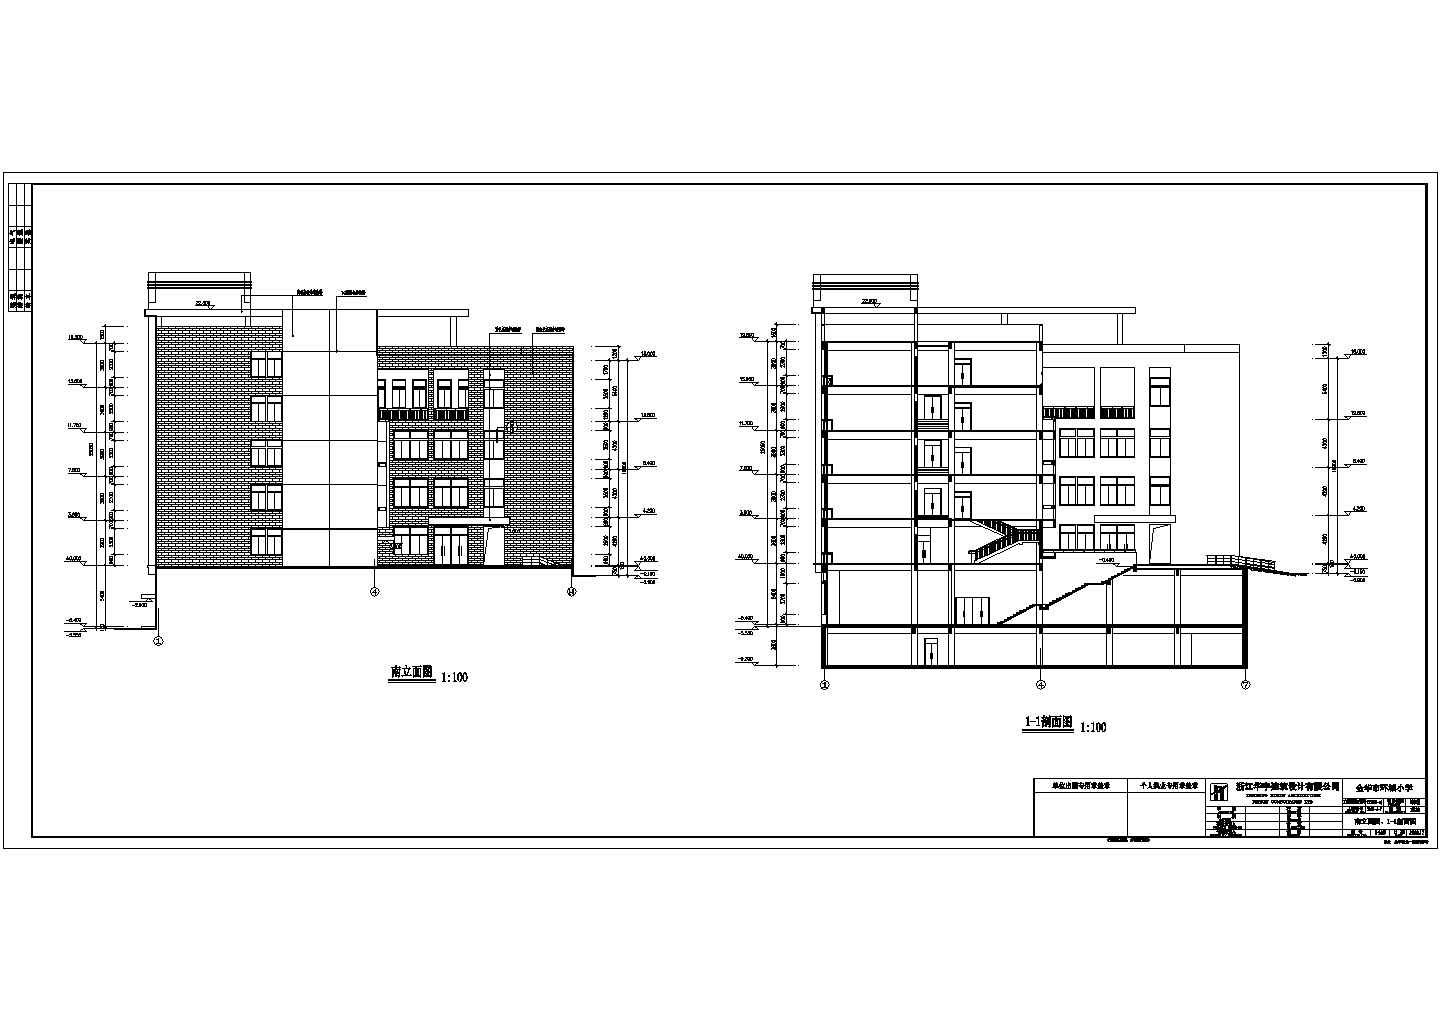 某6522㎡五层小学节能型综合楼建筑施工套图(带公共建筑节能设计表,防空地下室防护功能平战转换表)